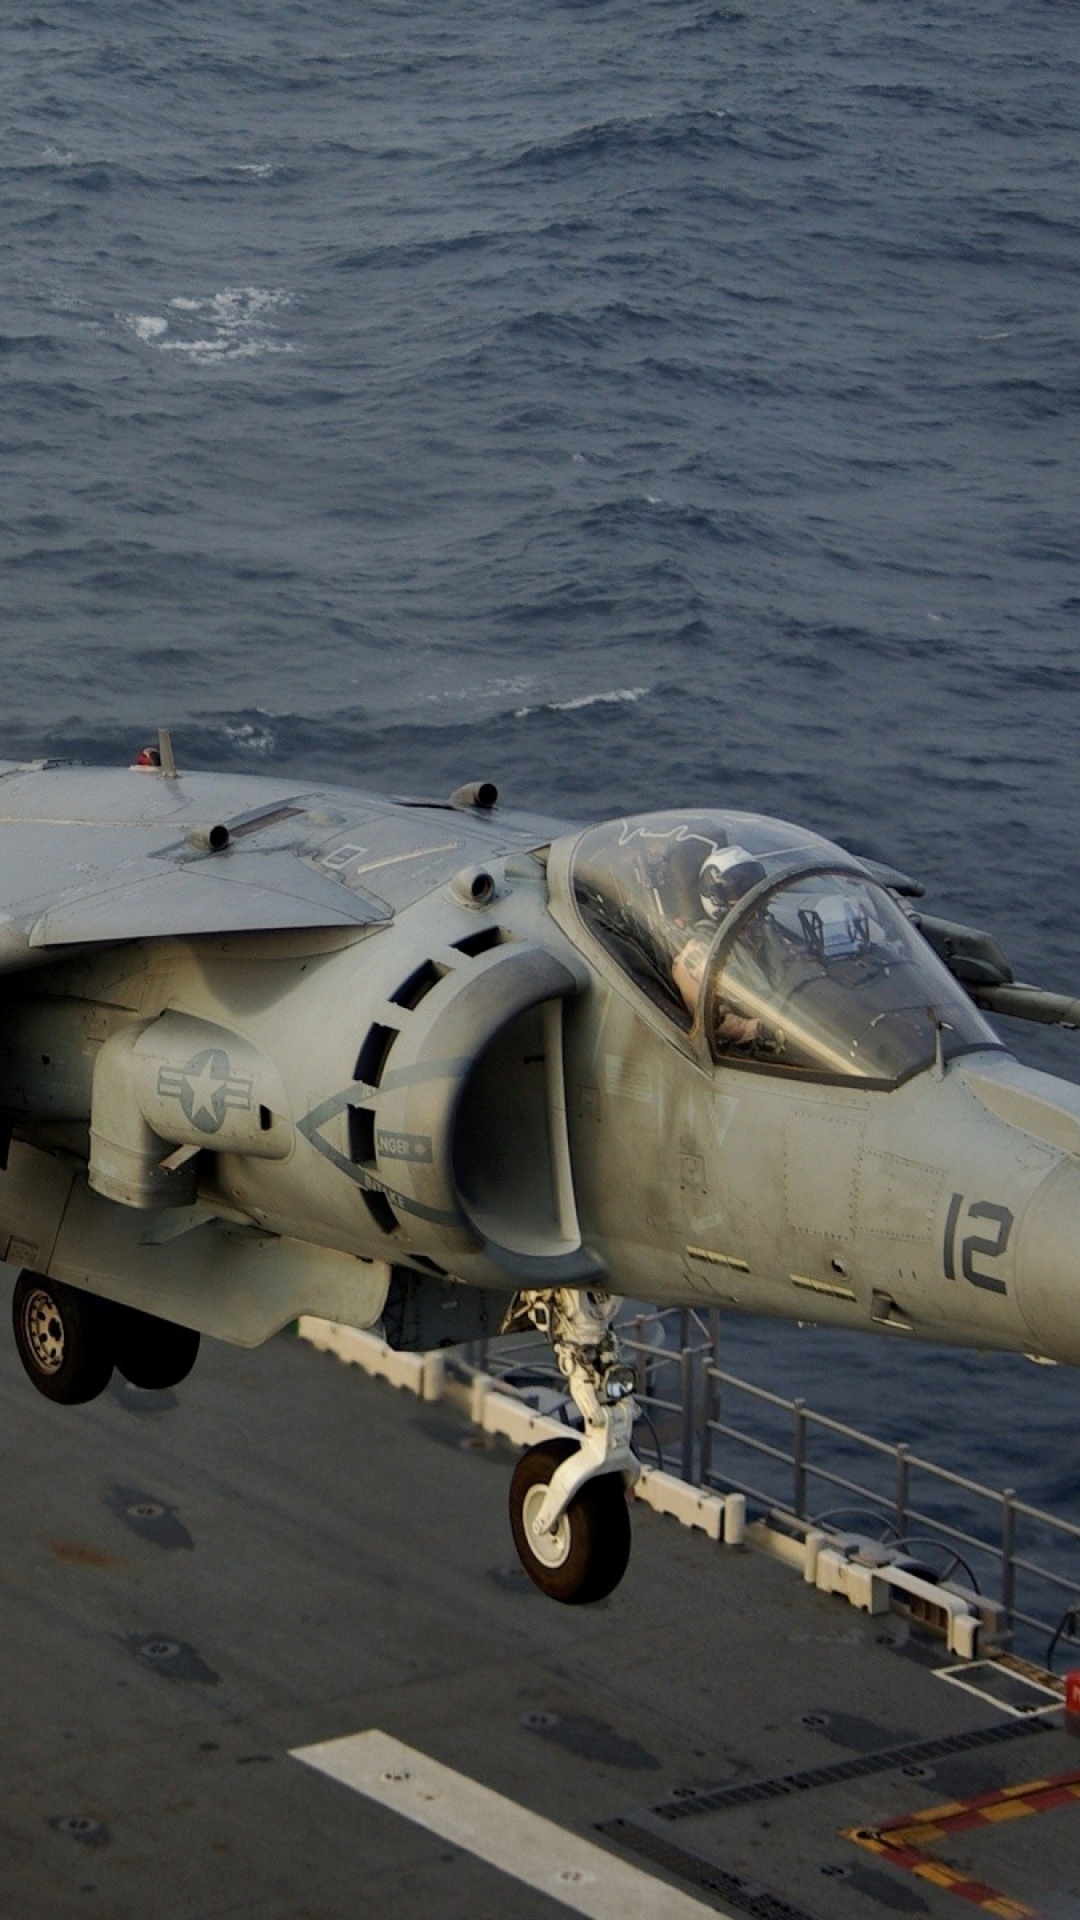 霍克*西德利鹞, 麦克道格拉斯AV-8B Harrier II, 鹞跳喷, 喷气式飞机, 军用飞机 壁纸 1080x1920 允许